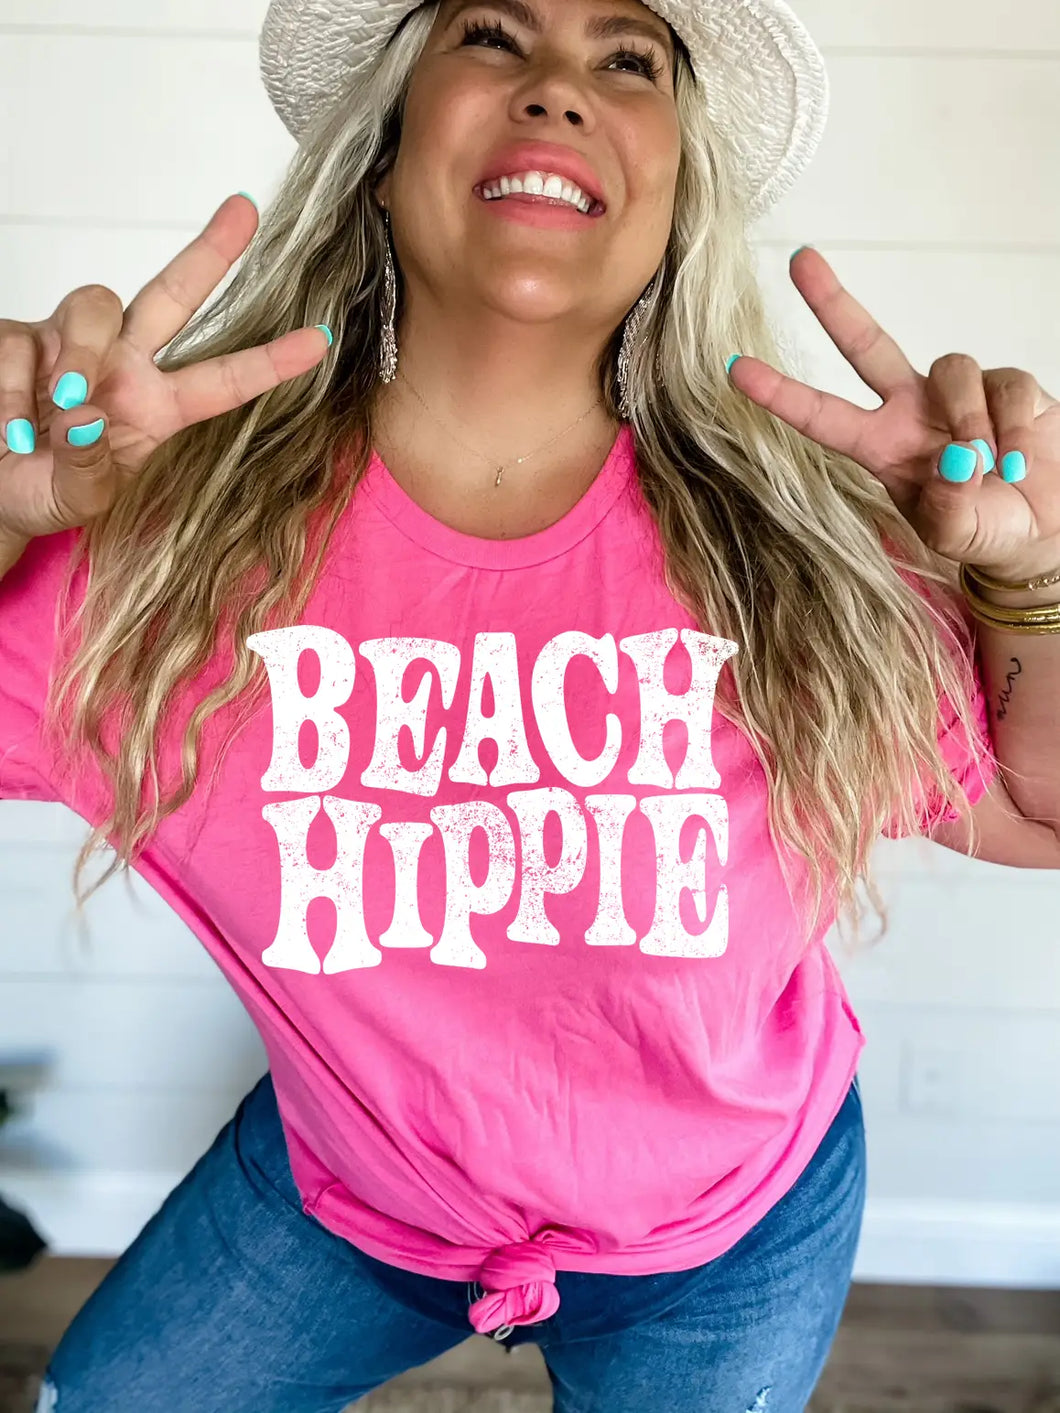 Pink Beach Hippie Graphic T-Shirt